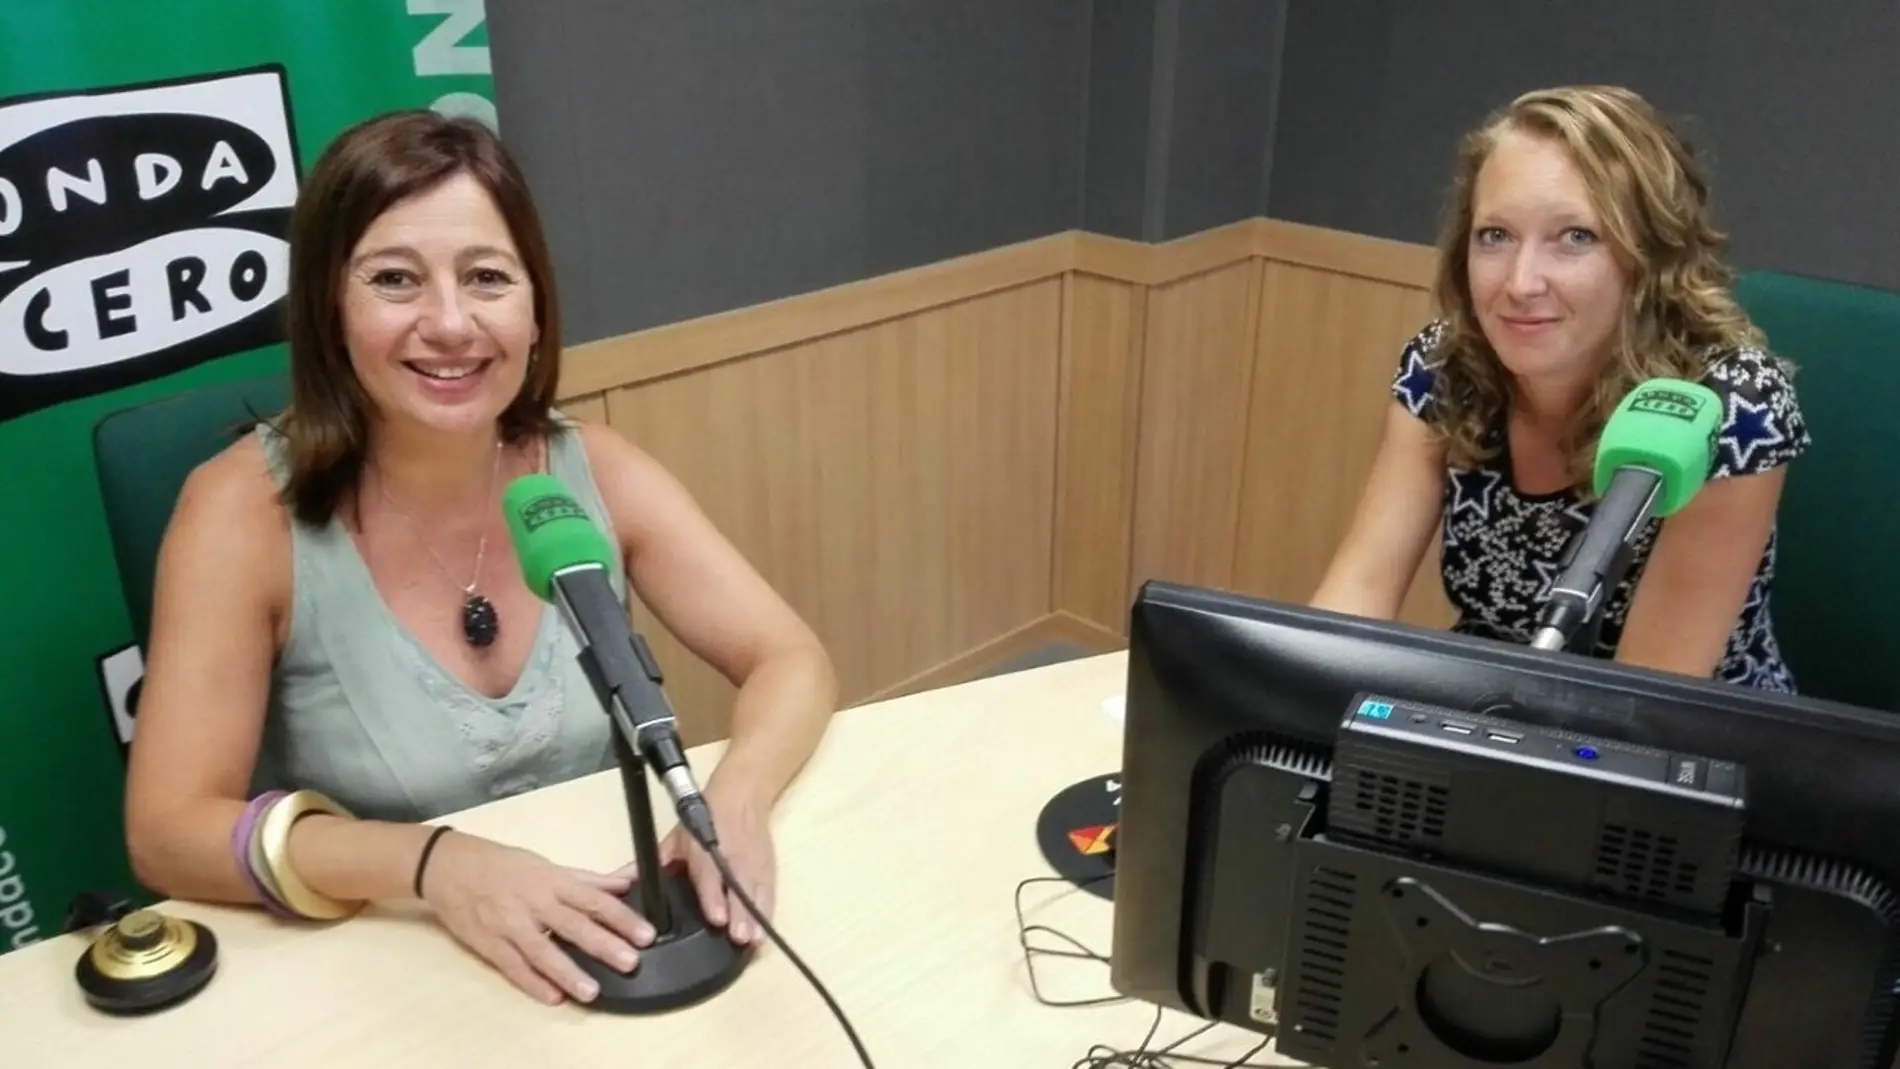 Francina Armengol hace balance de mitad de legislatura en Onda Cero Mallorca